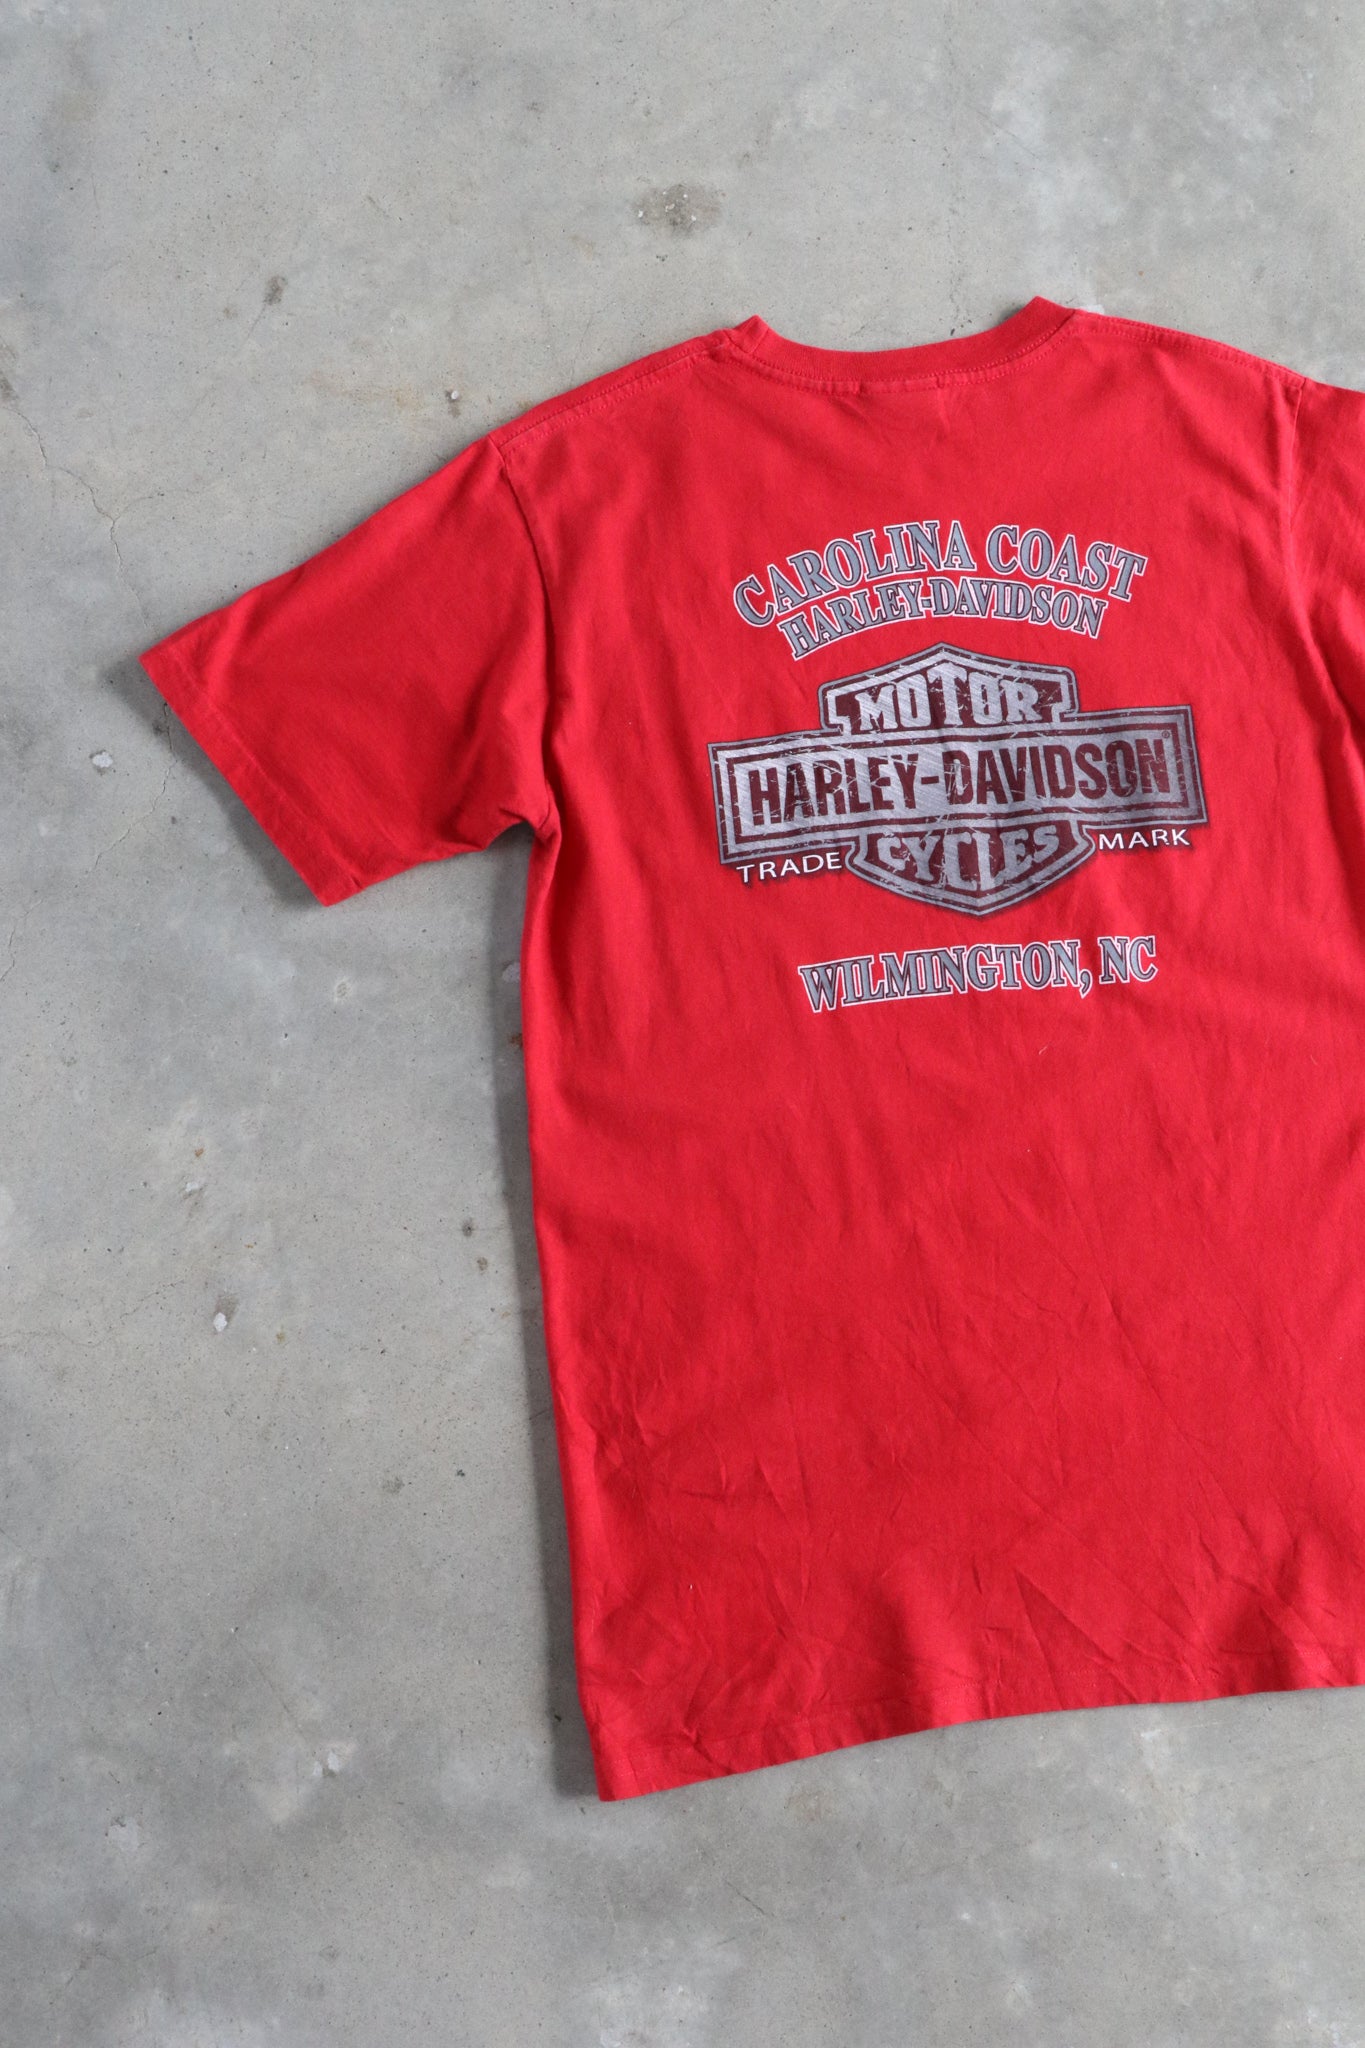 Vintage Harley Davidson Carolina Coast Tee Medium